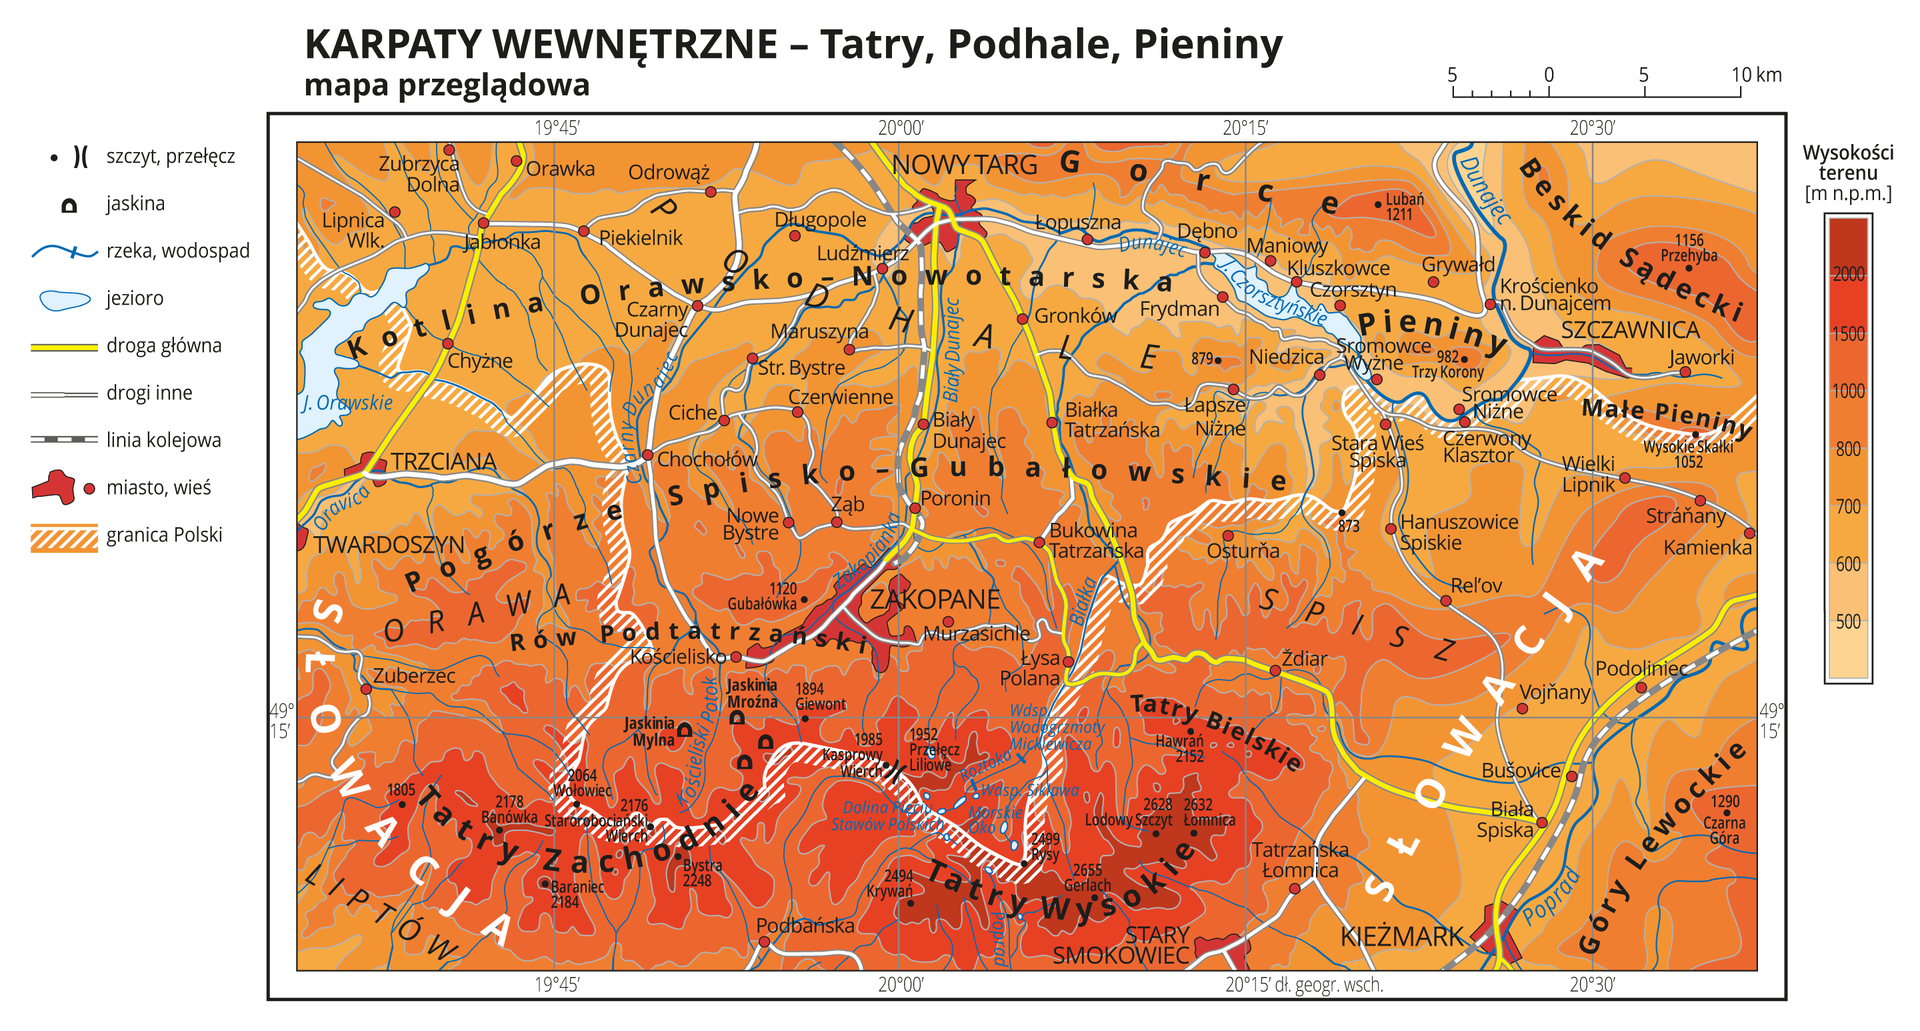 Mapa hipsometryczna Karpat Wewnętrznych. Na dole mapy kolorem czerwonym zaznaczono Tatry Zachodnie i Tatry Wysokie. Po prawej stronie mapy widoczna podziałka hipsometryczna z oznaczonymi wysokościami terenu. Po lewej stronie mapy legenda ze znakami kartograficznymi: szczyt, przełęcz, jaskinia, rzeka, jezioro, droga główna, drogi inne, linia kolejowa, granica Polski.